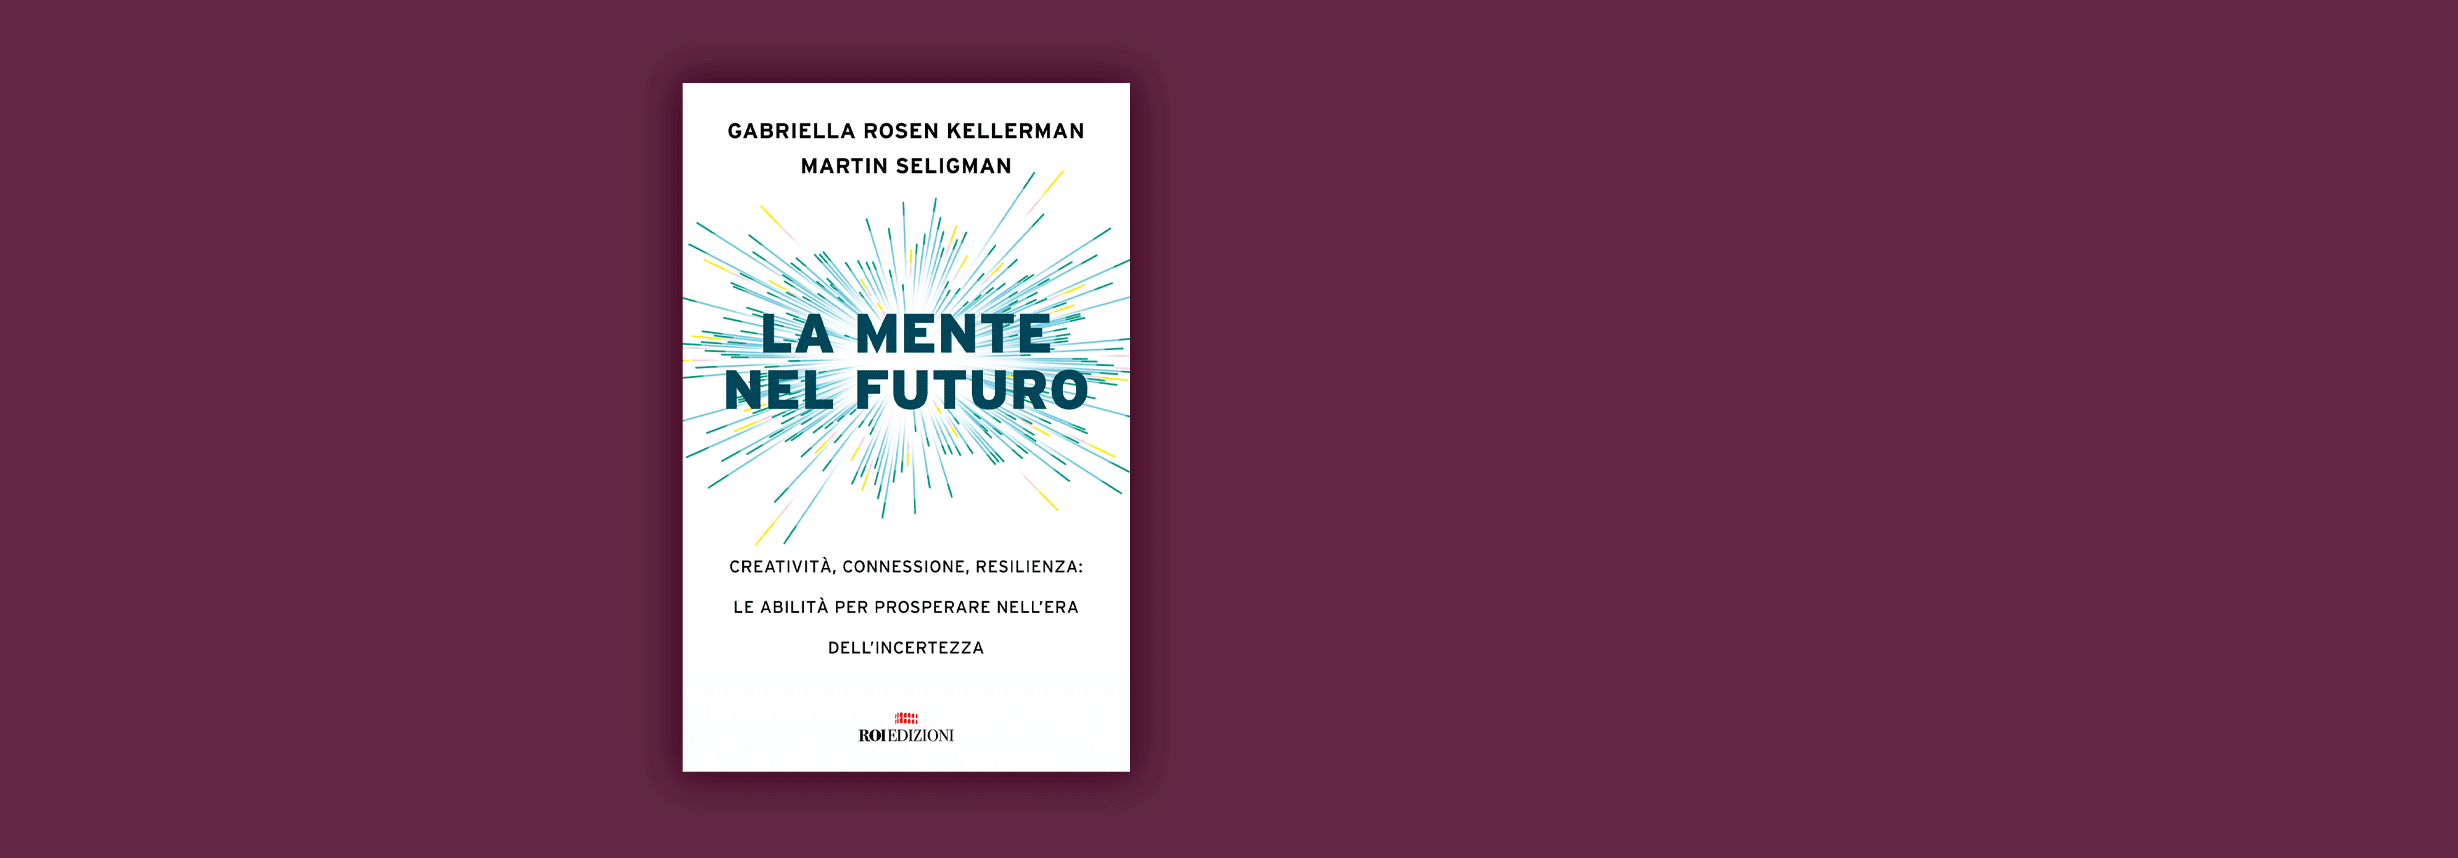 La mente nel futuro, Gabriella Rosen Kellerman, Martin Seligman